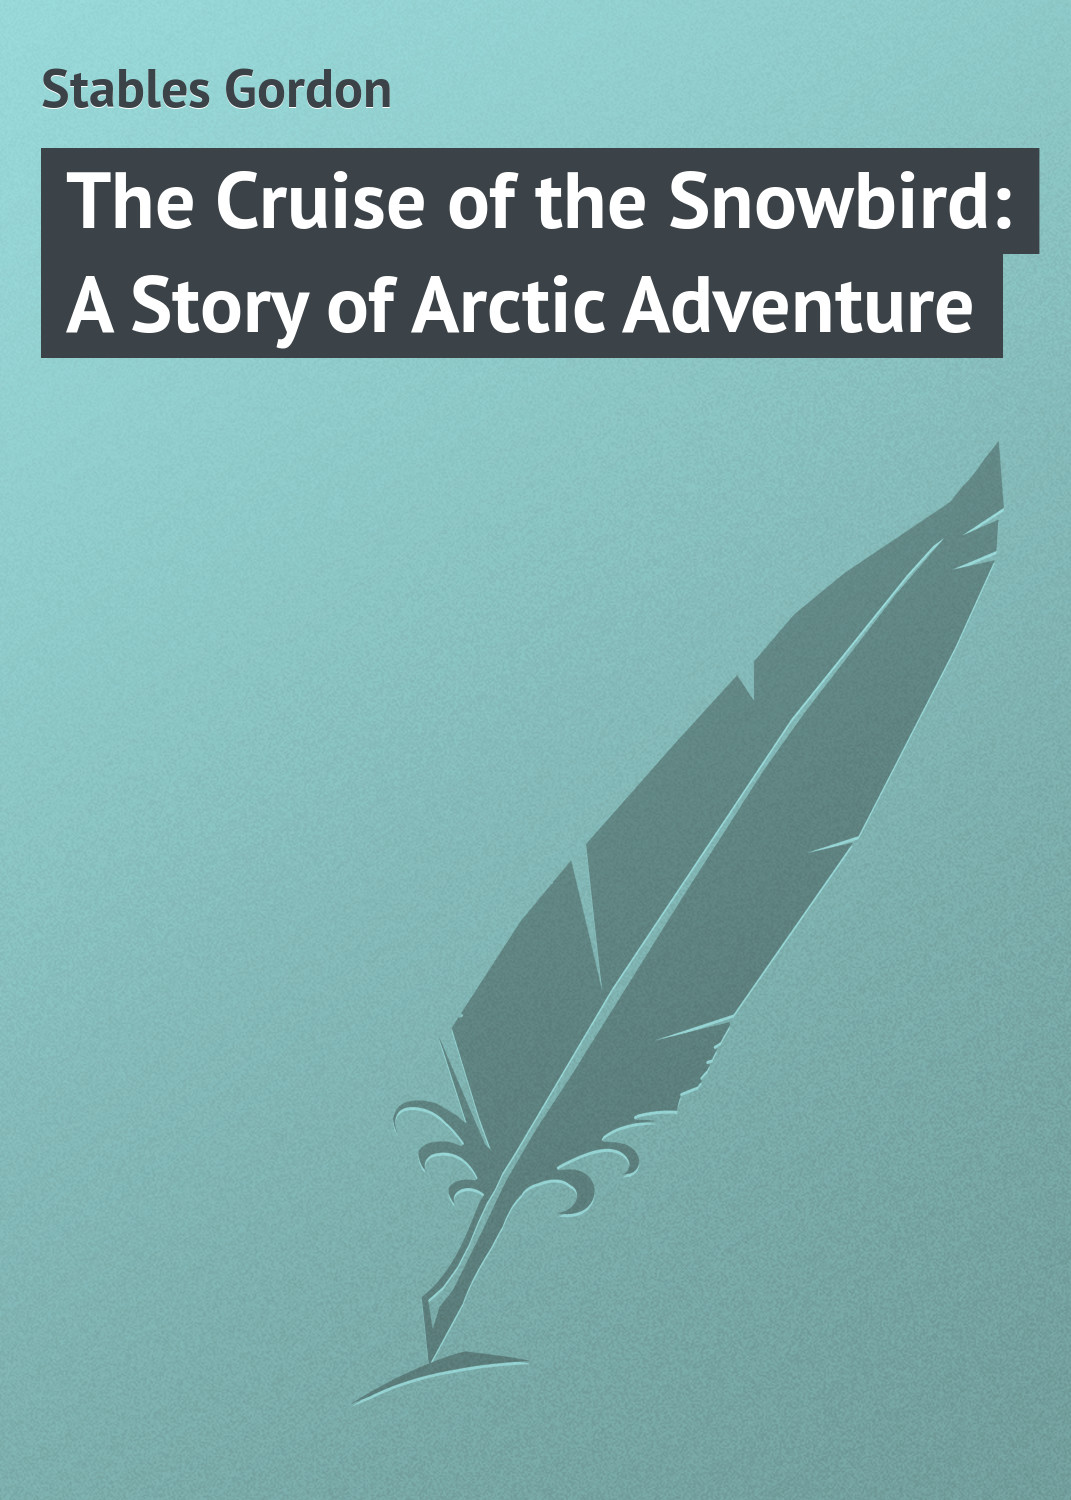 Книга The Cruise of the Snowbird: A Story of Arctic Adventure из серии , созданная Gordon Stables, может относится к жанру Природа и животные, Зарубежная классика, Зарубежные детские книги. Стоимость книги The Cruise of the Snowbird: A Story of Arctic Adventure  с идентификатором 23150971 составляет 5.99 руб.